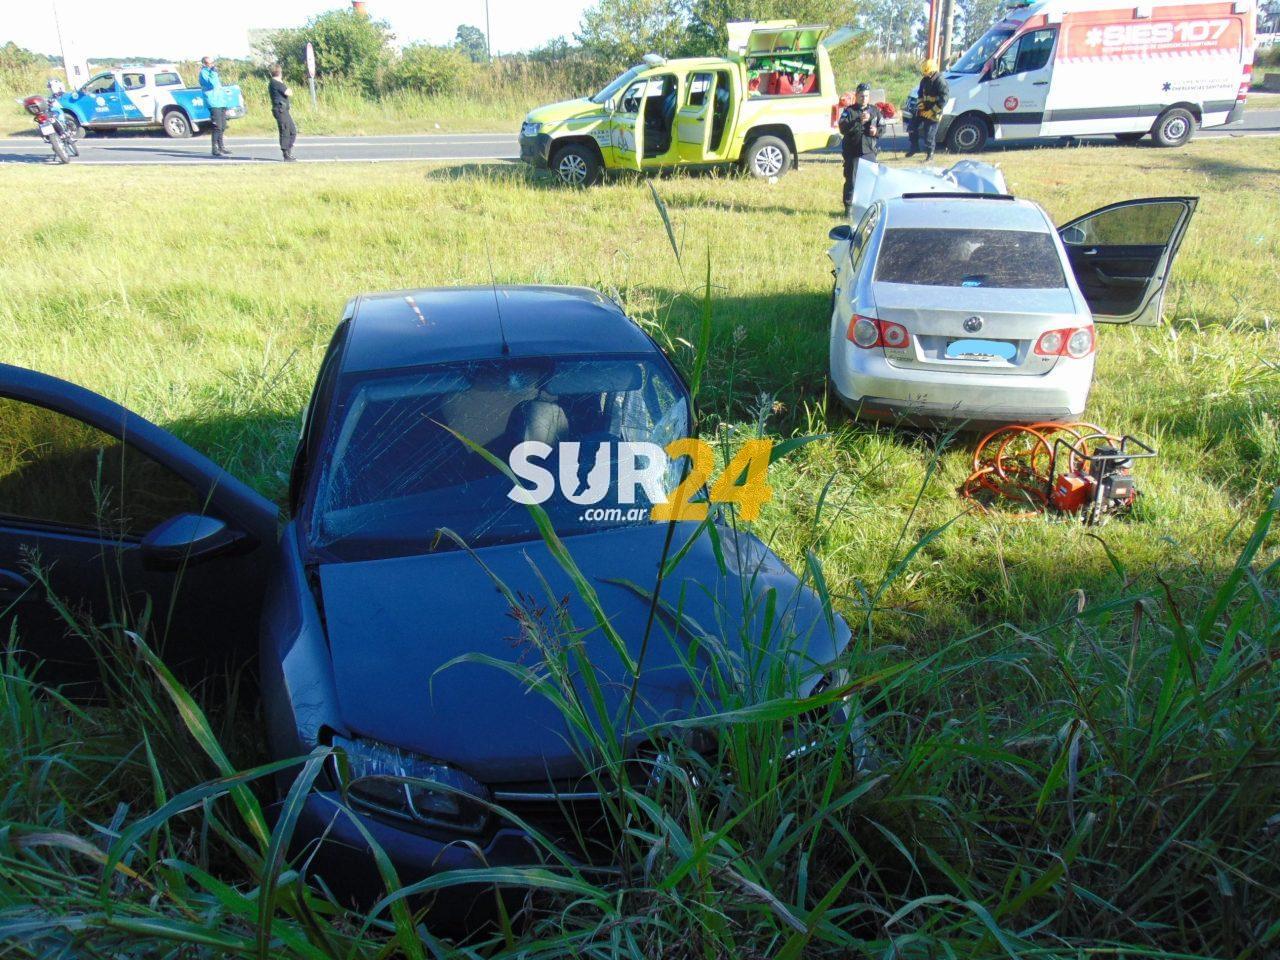 Venado Tuerto: tres hospitalizados tras violento accidente entre dos automóviles